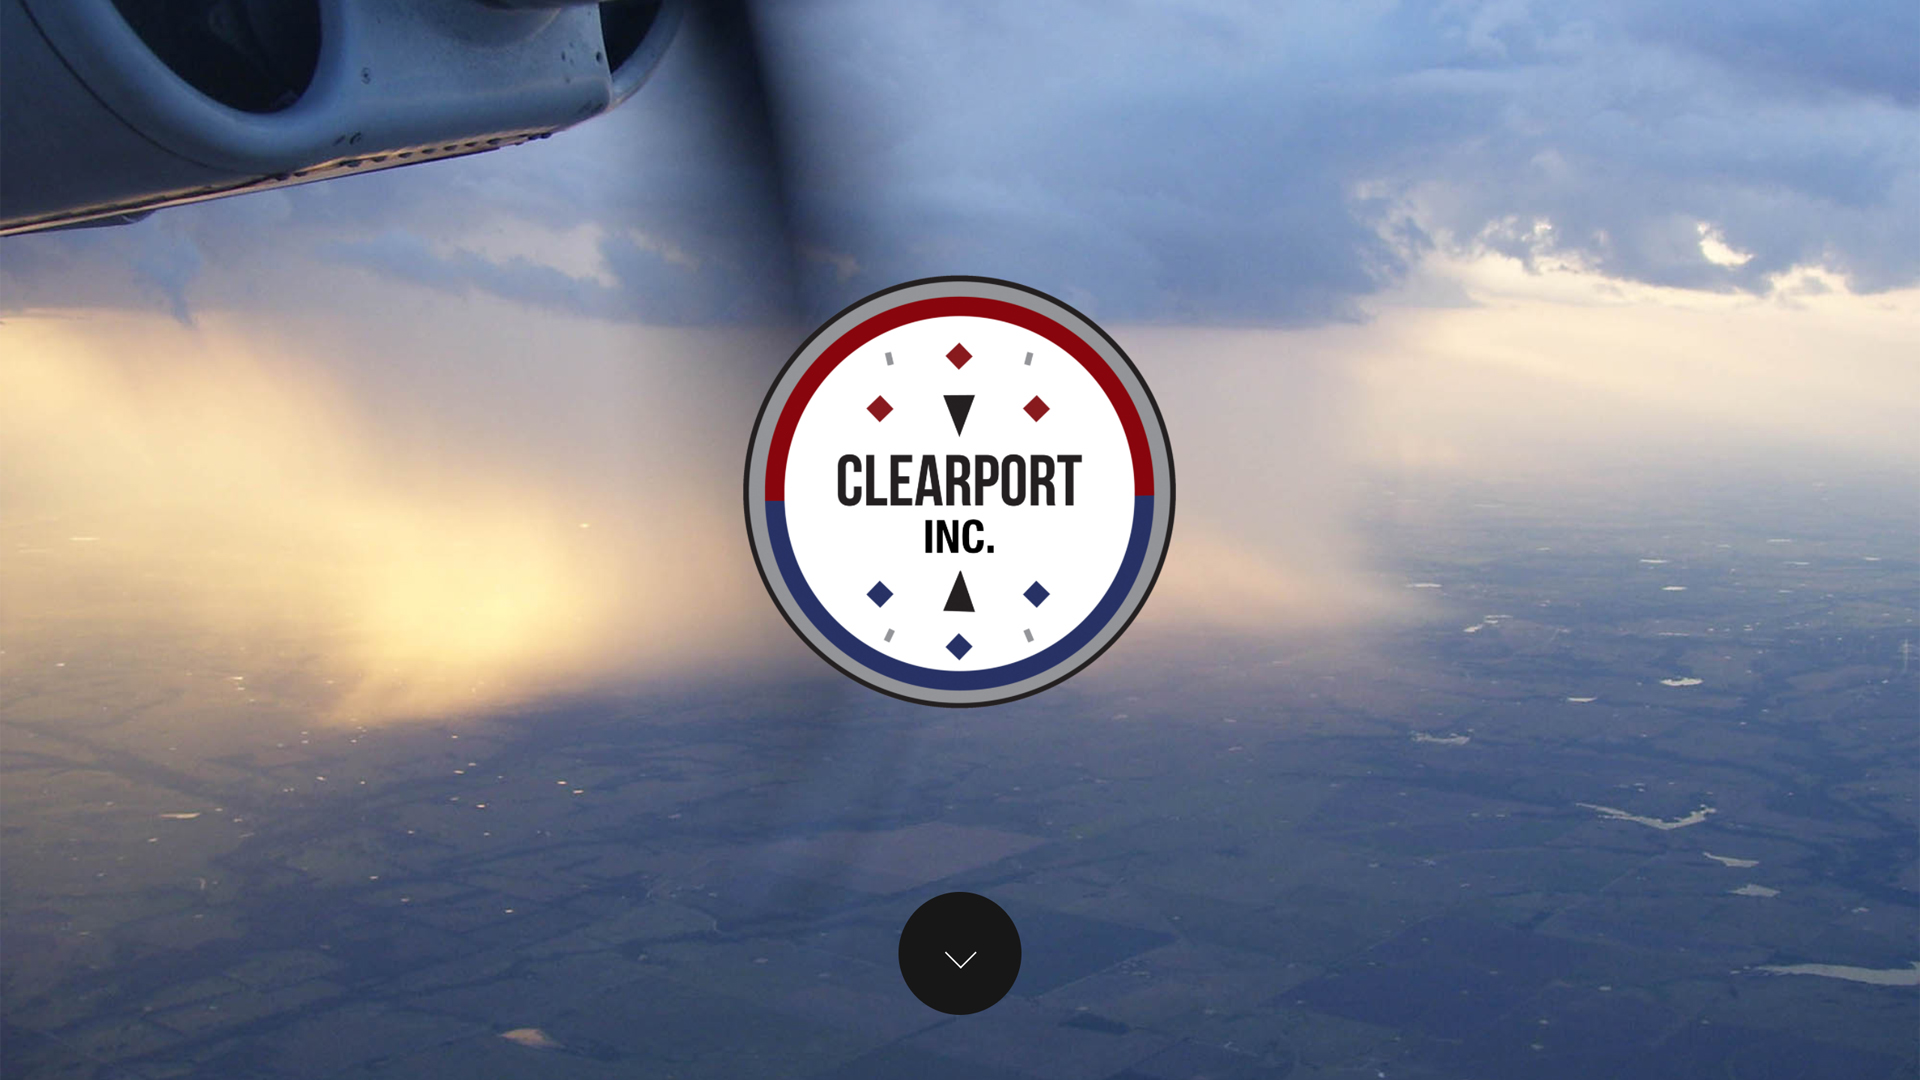 Clearport, INC website.jpg